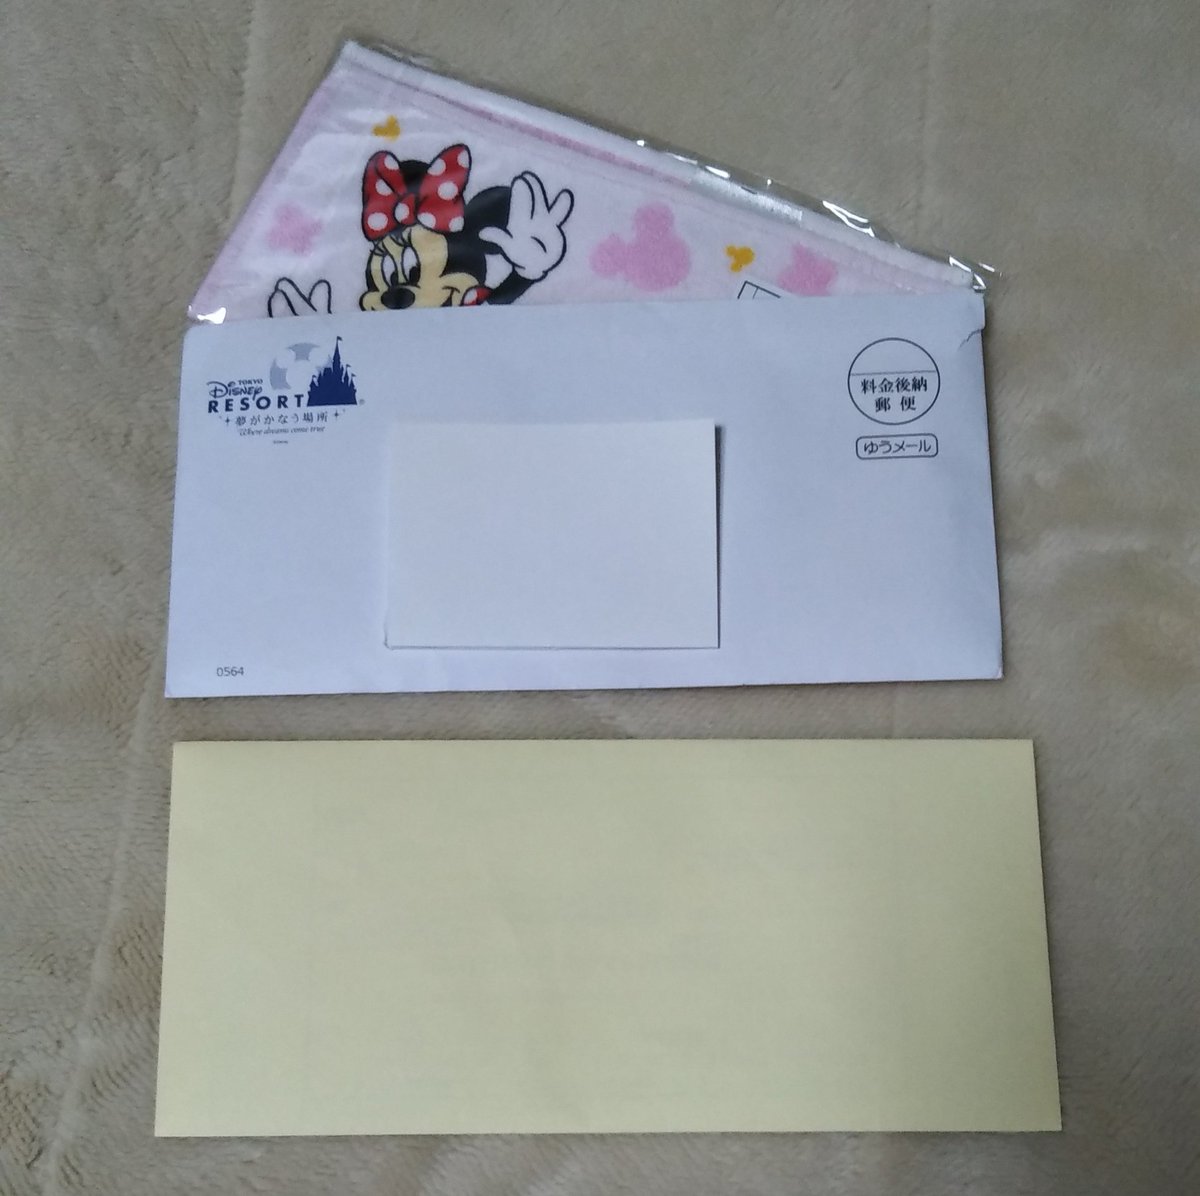 ペガサス ｐｇｓ على تويتر ディズニーの国勢調査依頼 黄色い封筒のやつ したら記念品届いた 丁寧に解答させていただきました